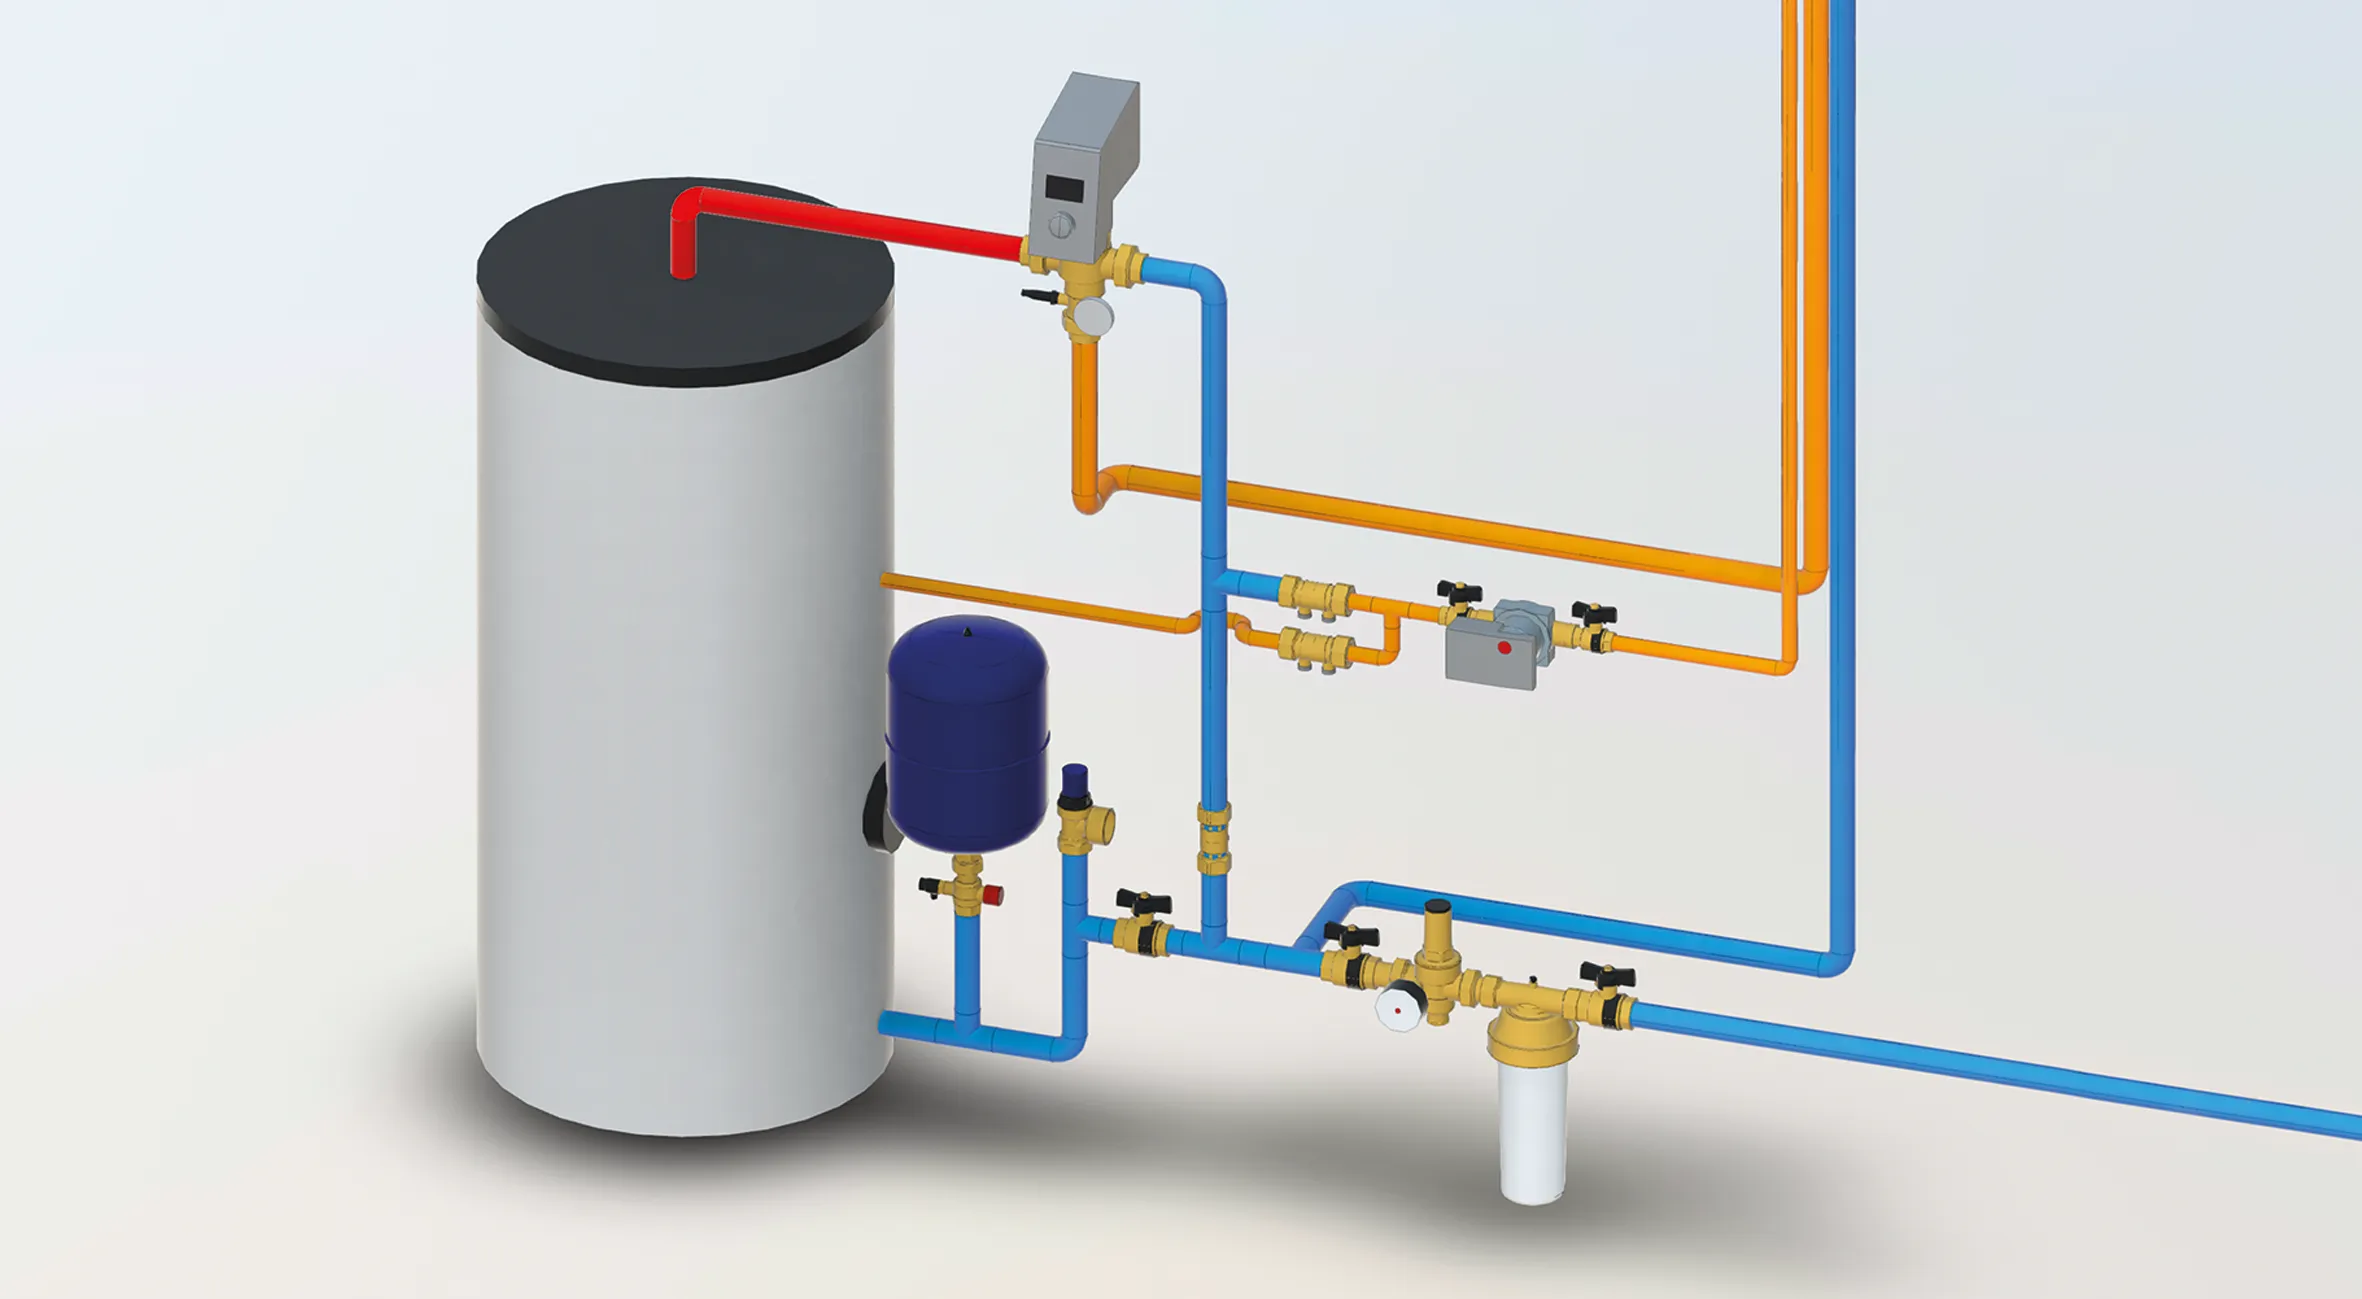 06 - Komponenten für Trink- und Trinkwarmwasseranlagen